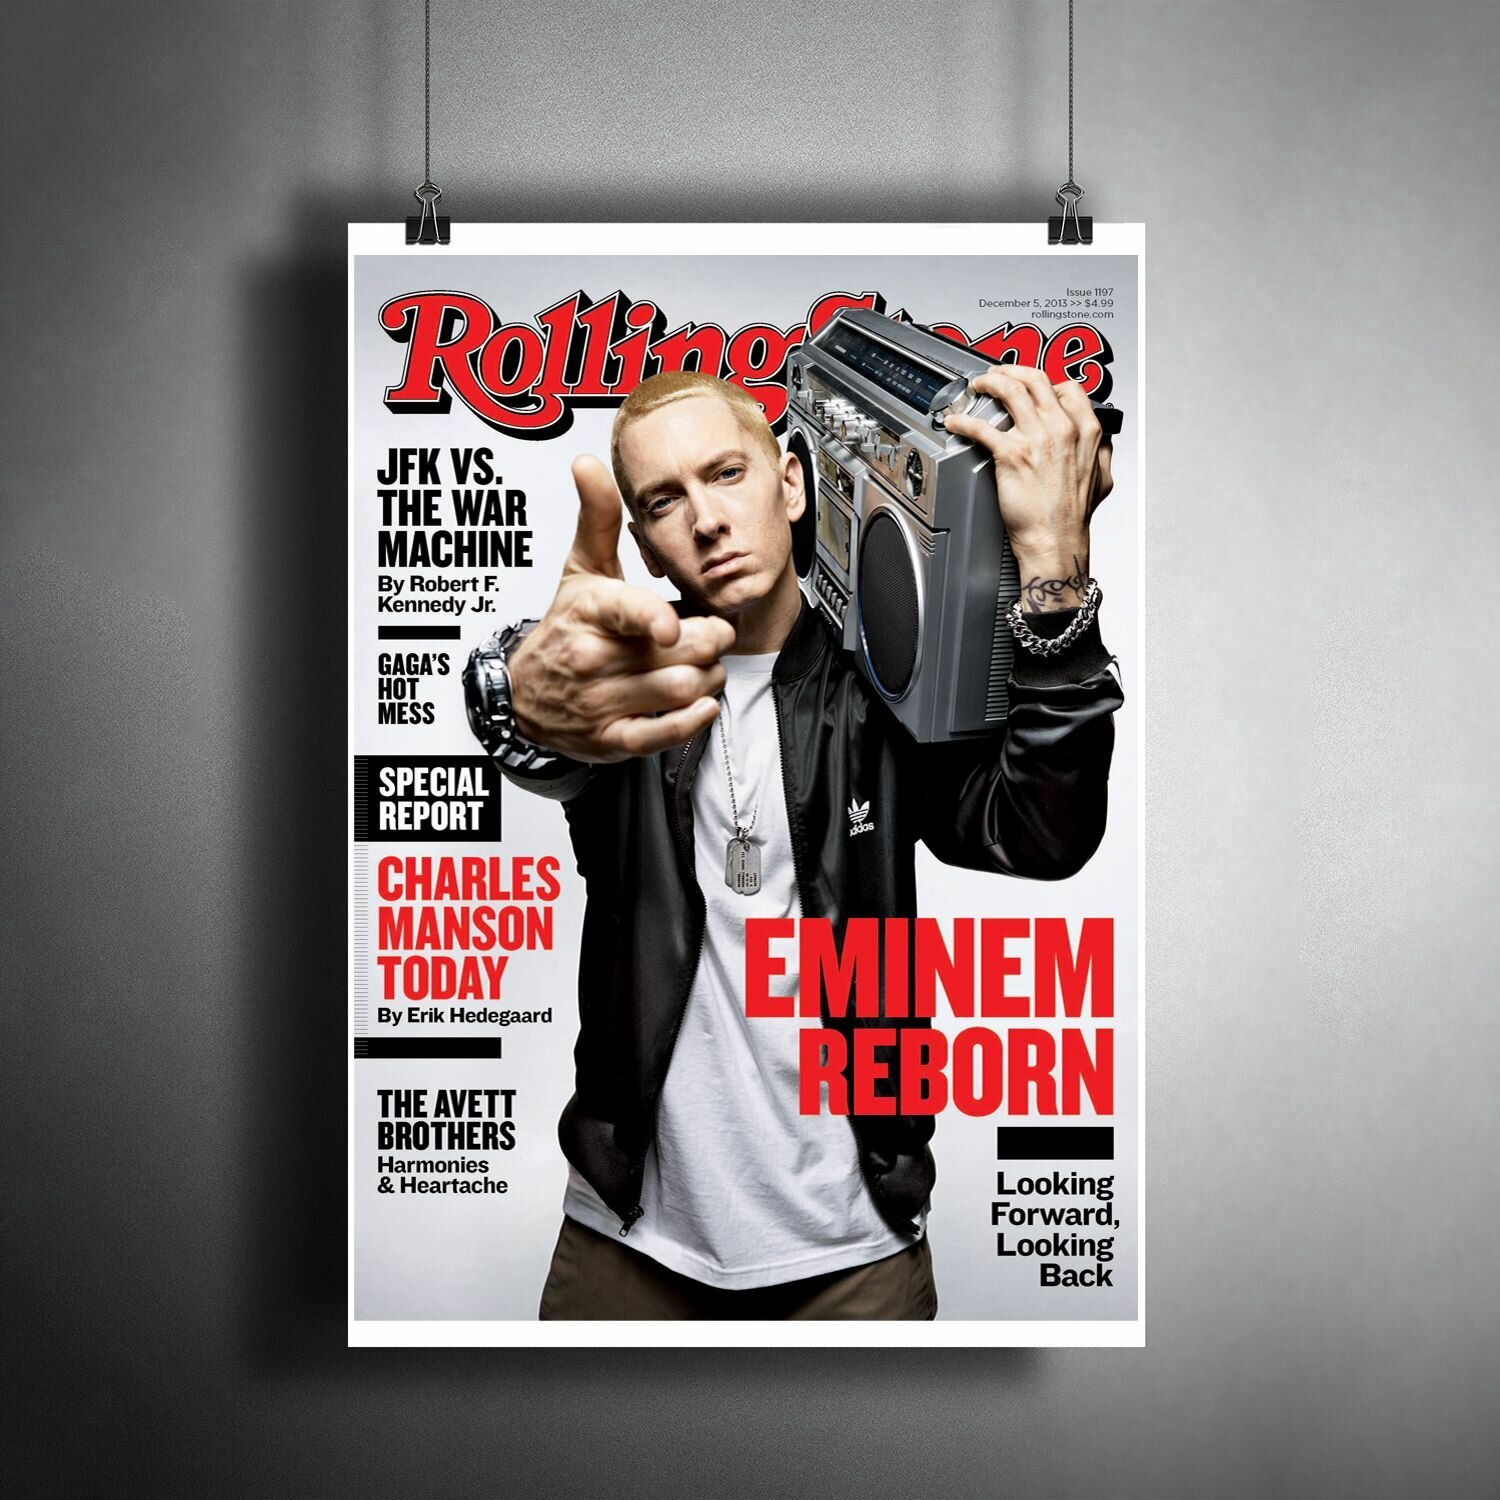 Постер плакат для интерьера "Эминем" Eminem Обложка журнала / Декор дома, офиса, комнаты, квартиры, детской A3 (297 x 420 мм)